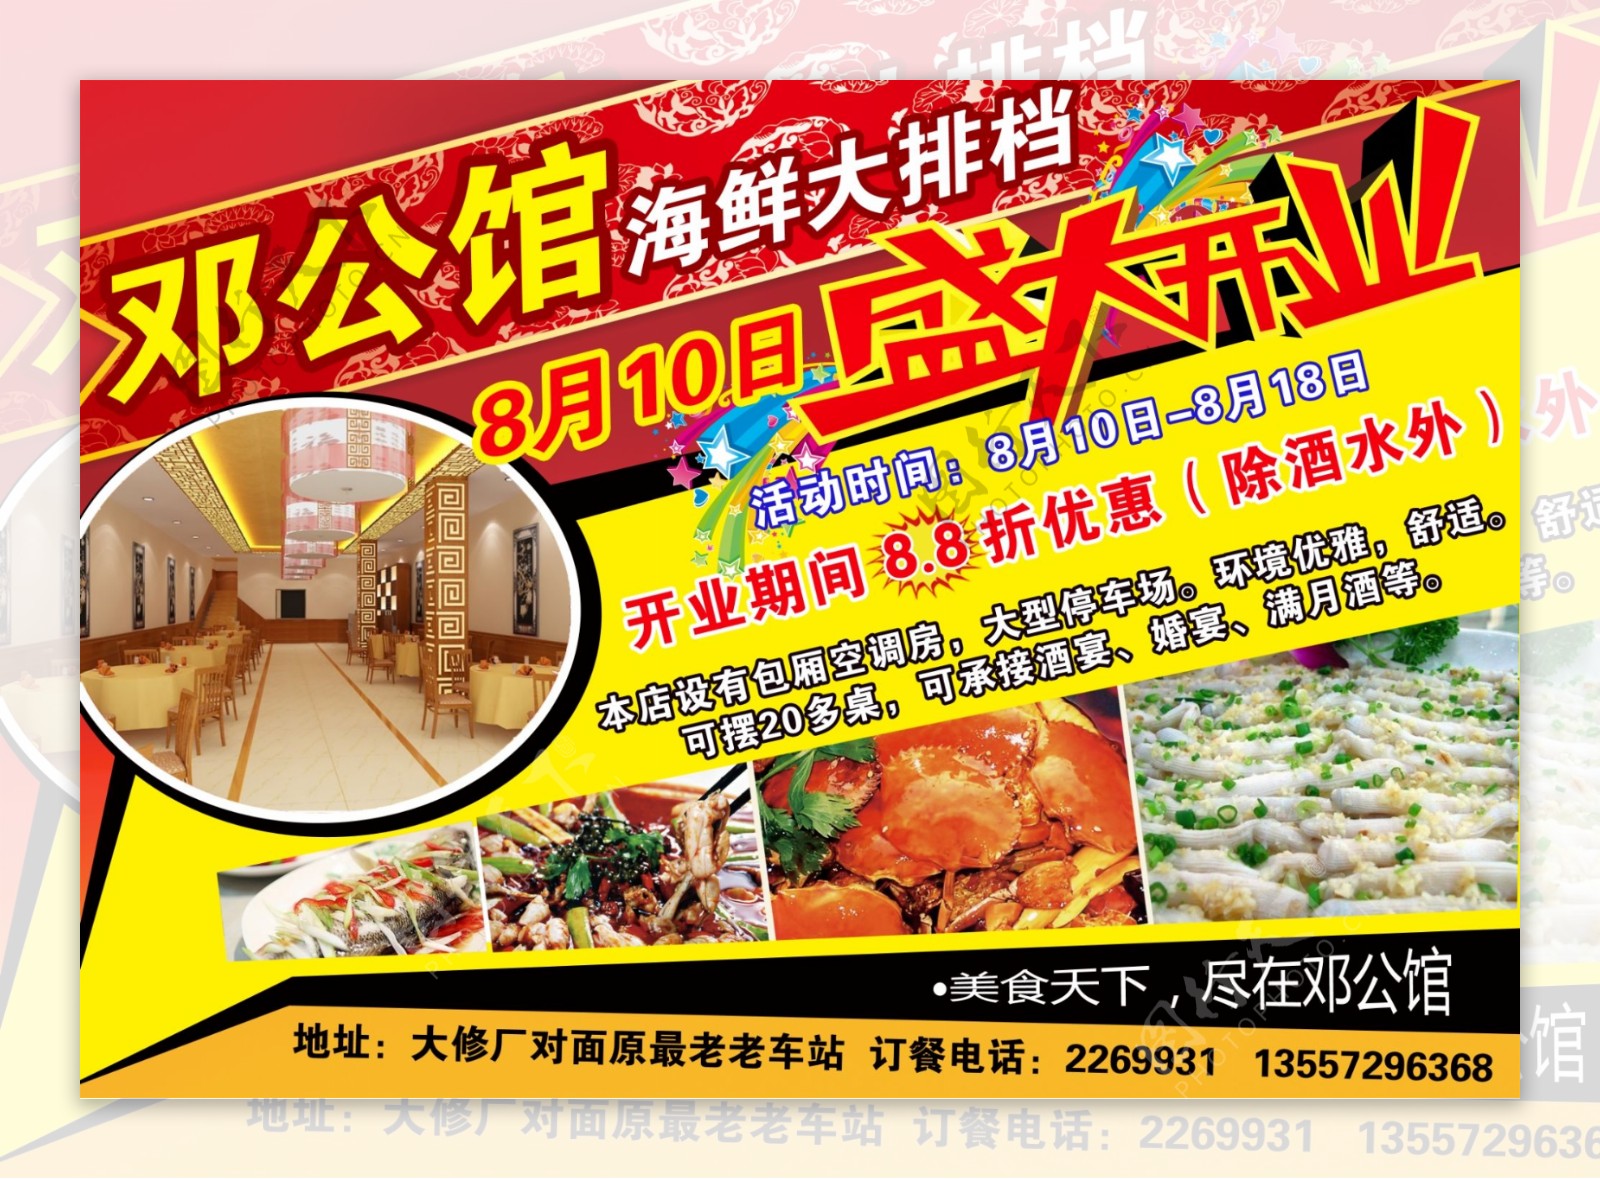 邓公馆饭店盛大开业宣传单图片